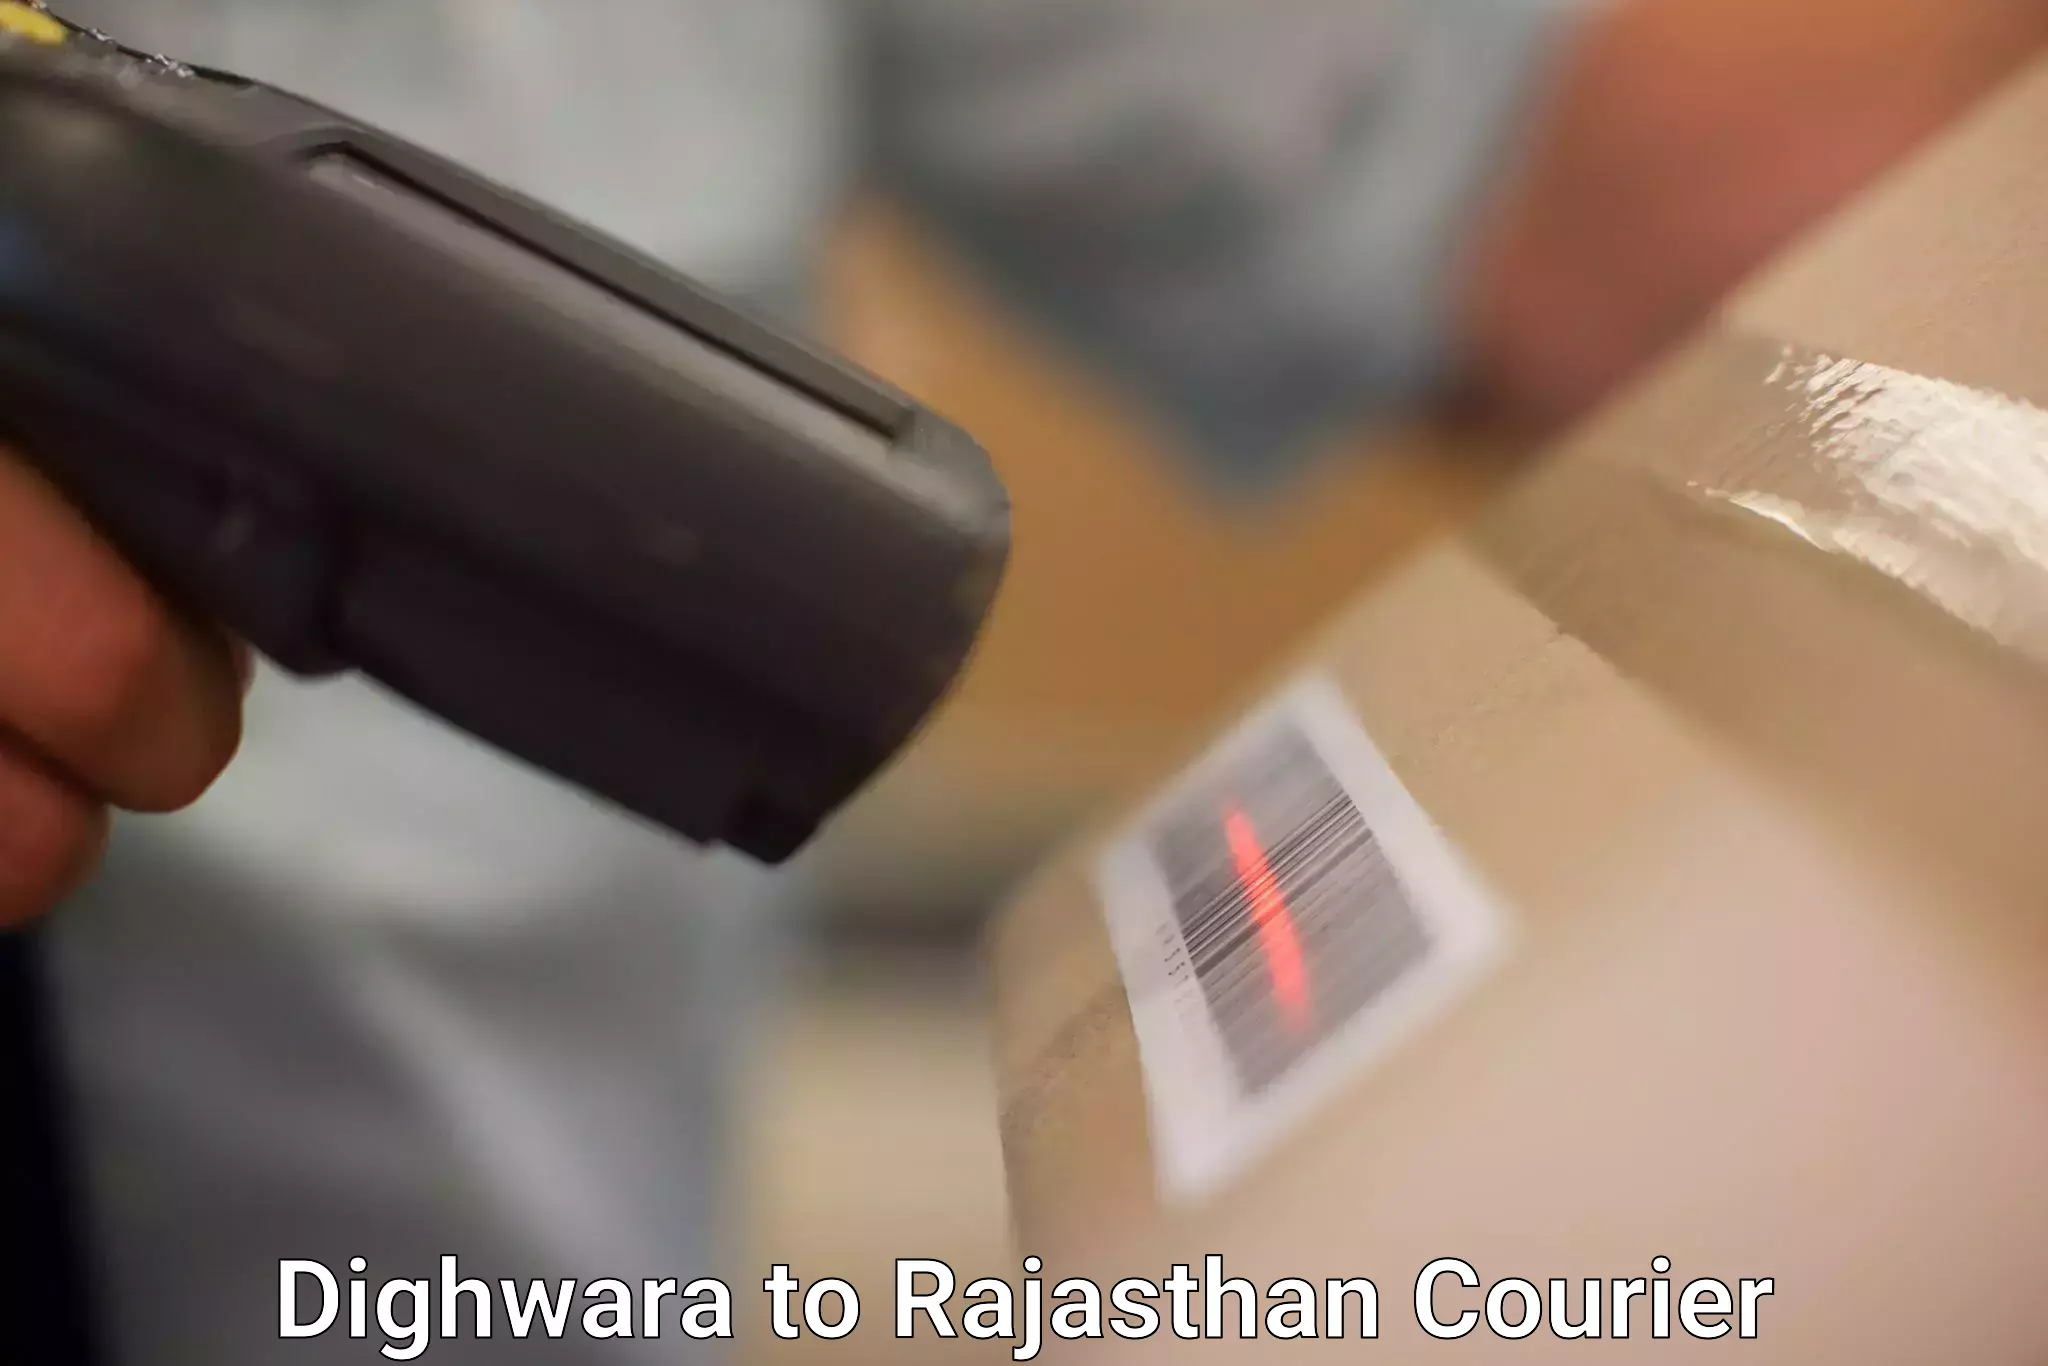 Bulk shipment in Dighwara to Sri Ganganagar